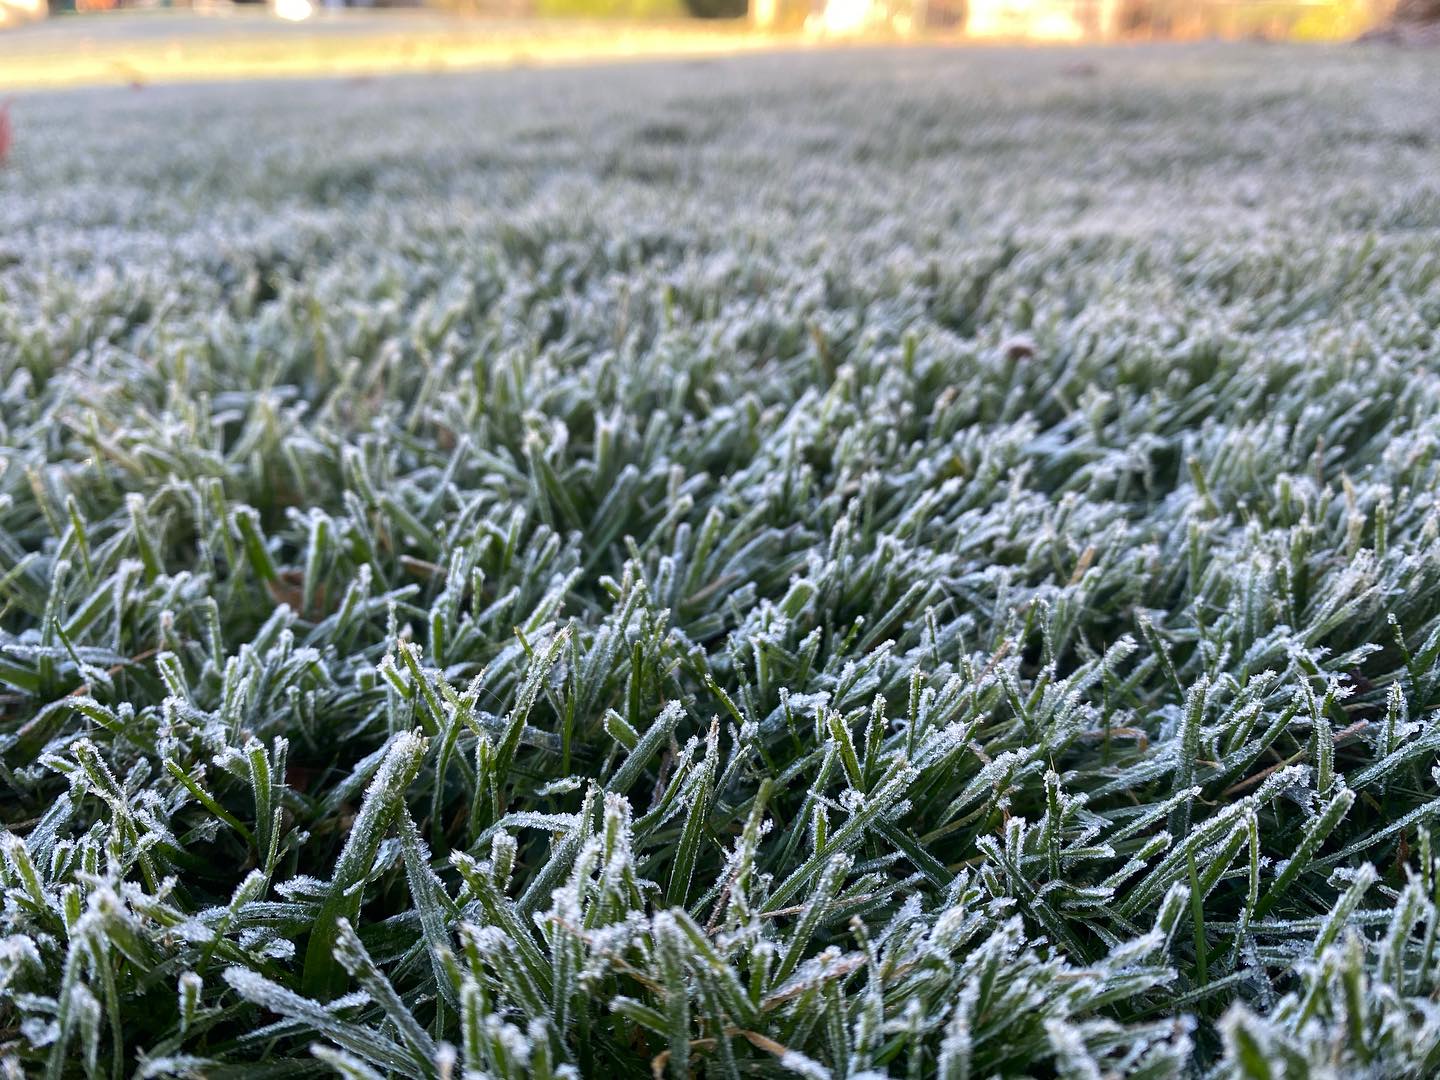 frozen cool season lawn in november